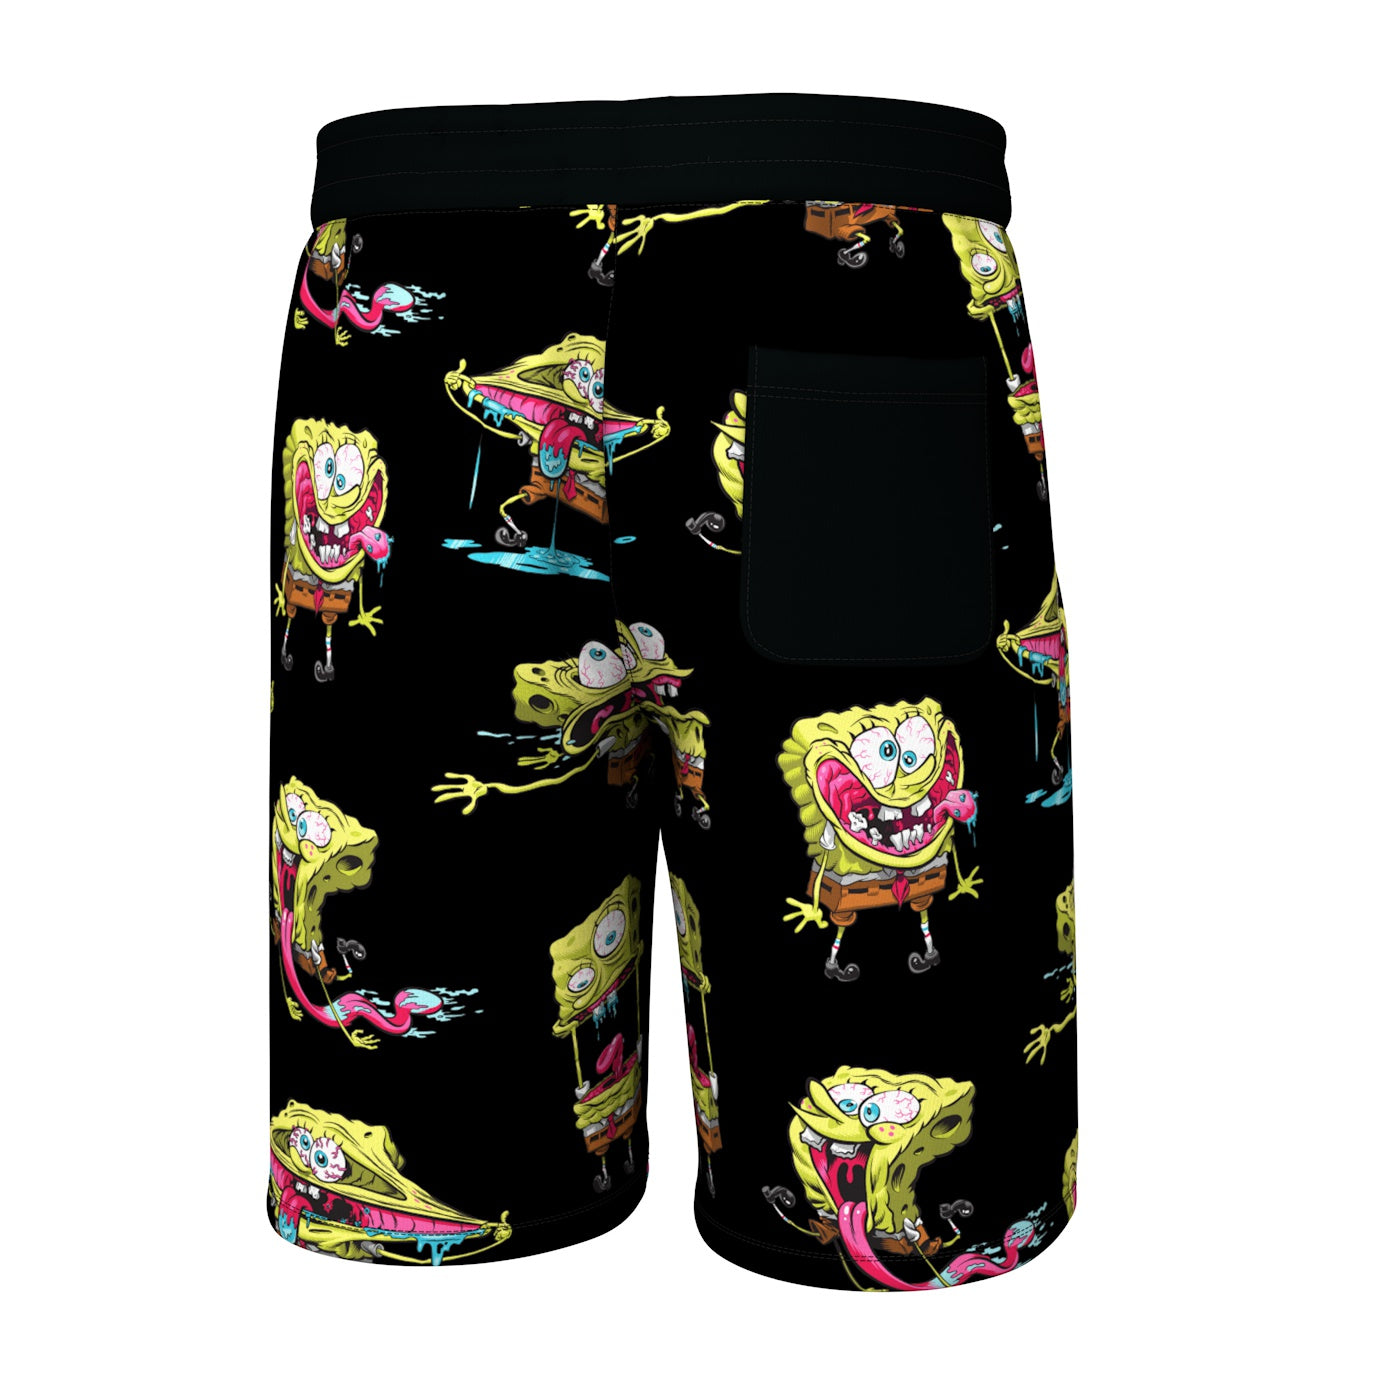 Freshhoods x SpongeBob Pattern Shorts